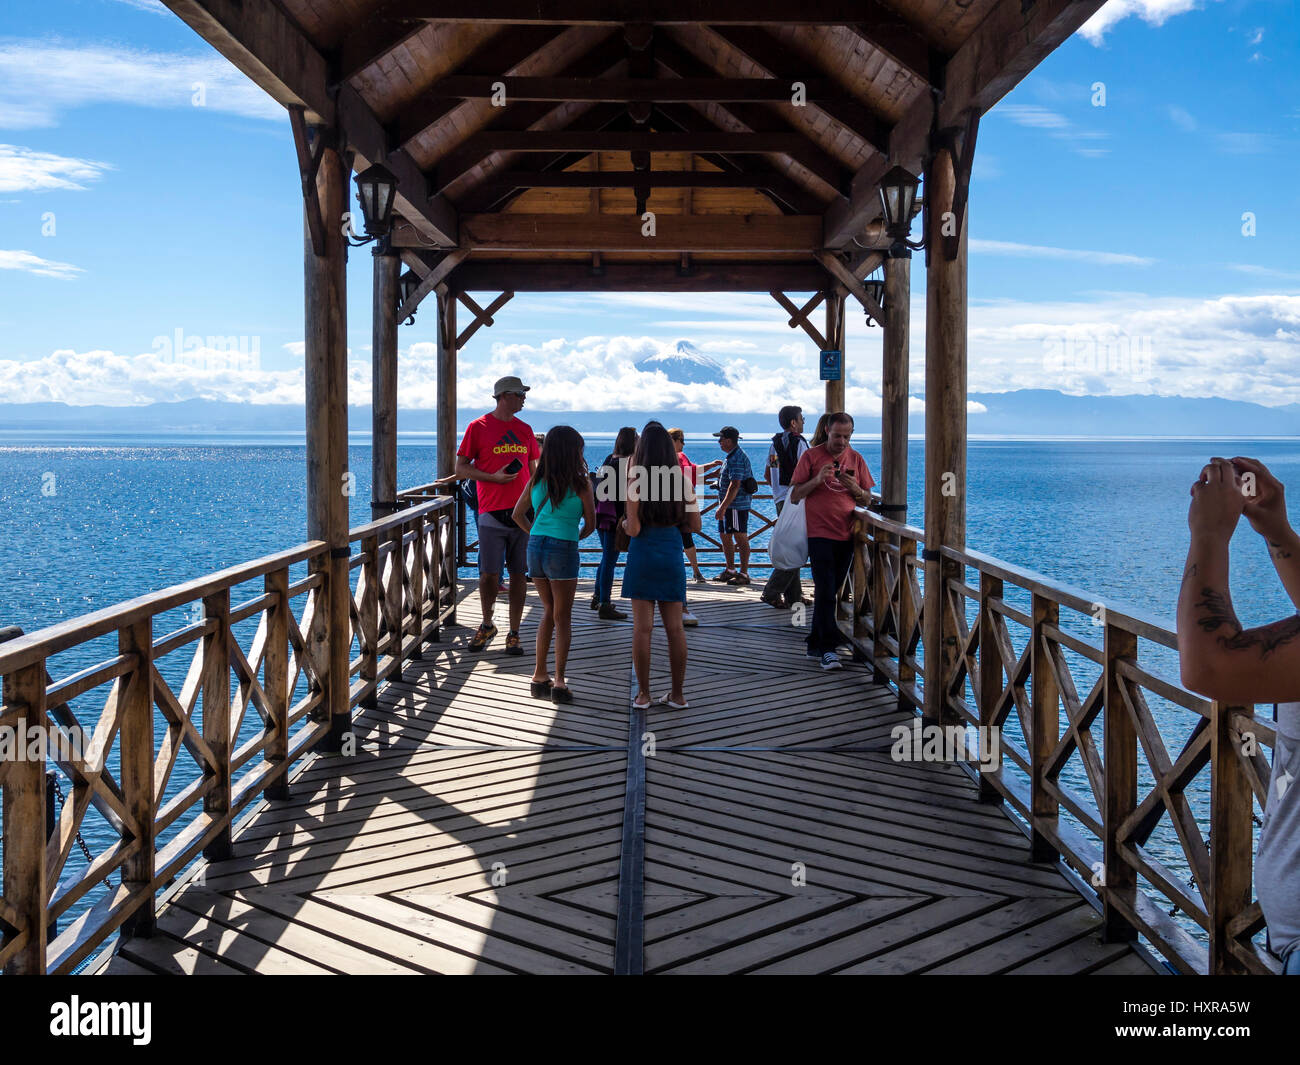 Blick auf Pier in Richtung Vulkan Osorno, Touristen auf der Pier fotografieren, Frutilliar, Dorf am See Lago Llanquihue, chilenische Seenplatte, Chi Stockfoto